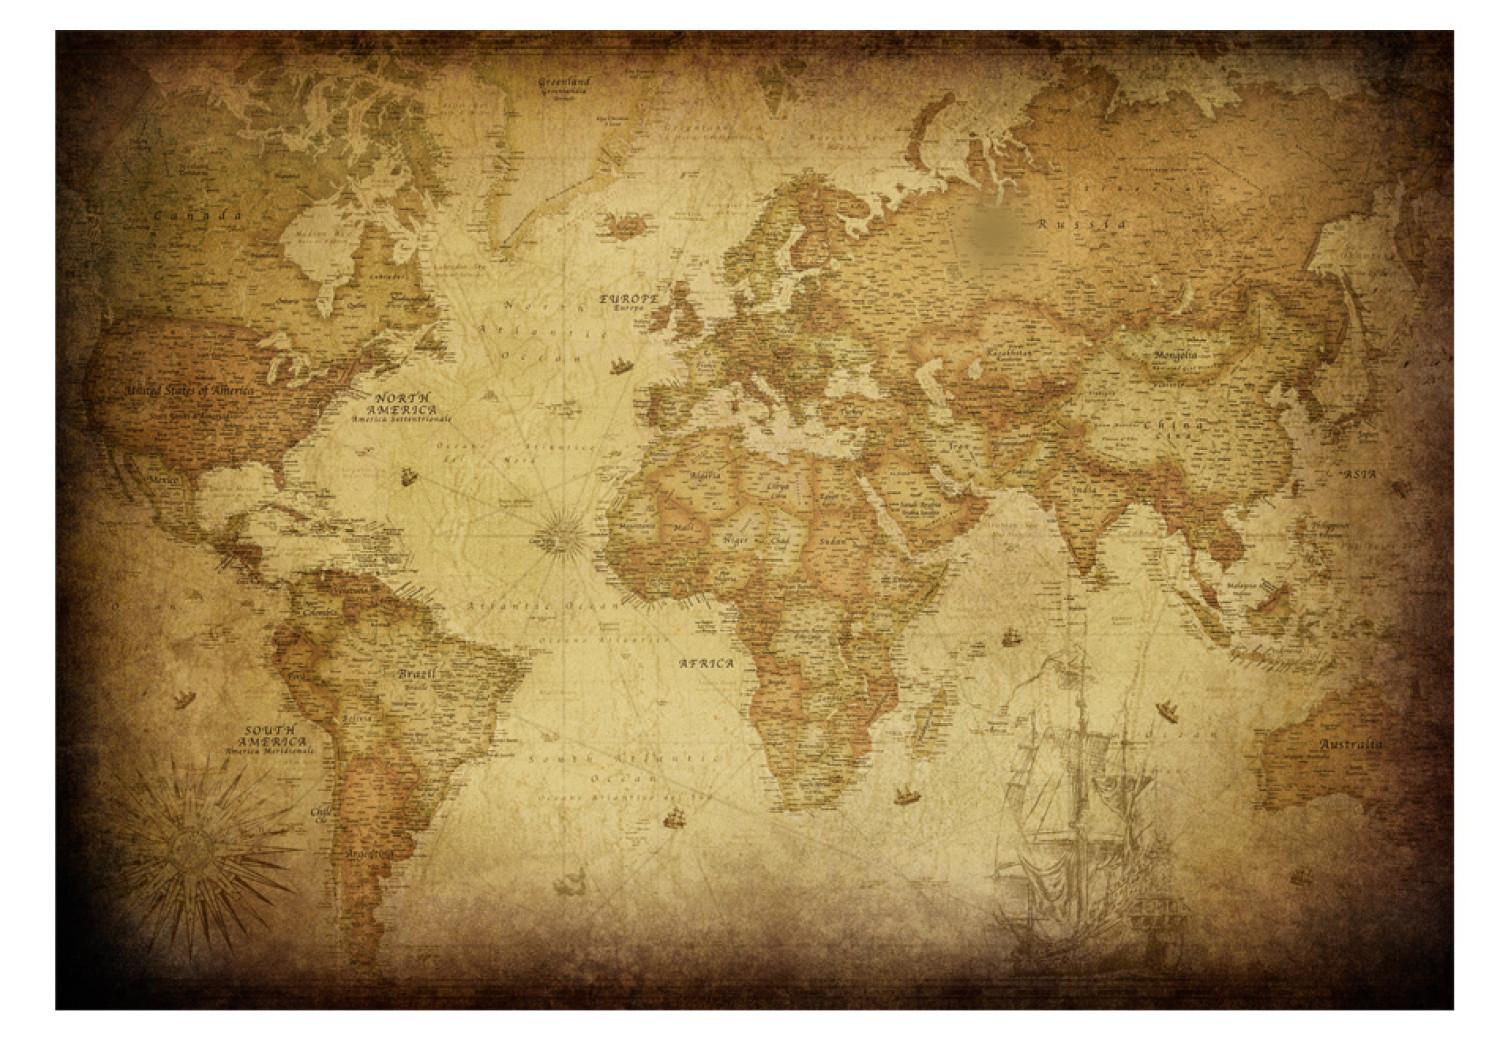 Fotomural decorativo Explorador - antiguo mapa del mundo en estilo retro